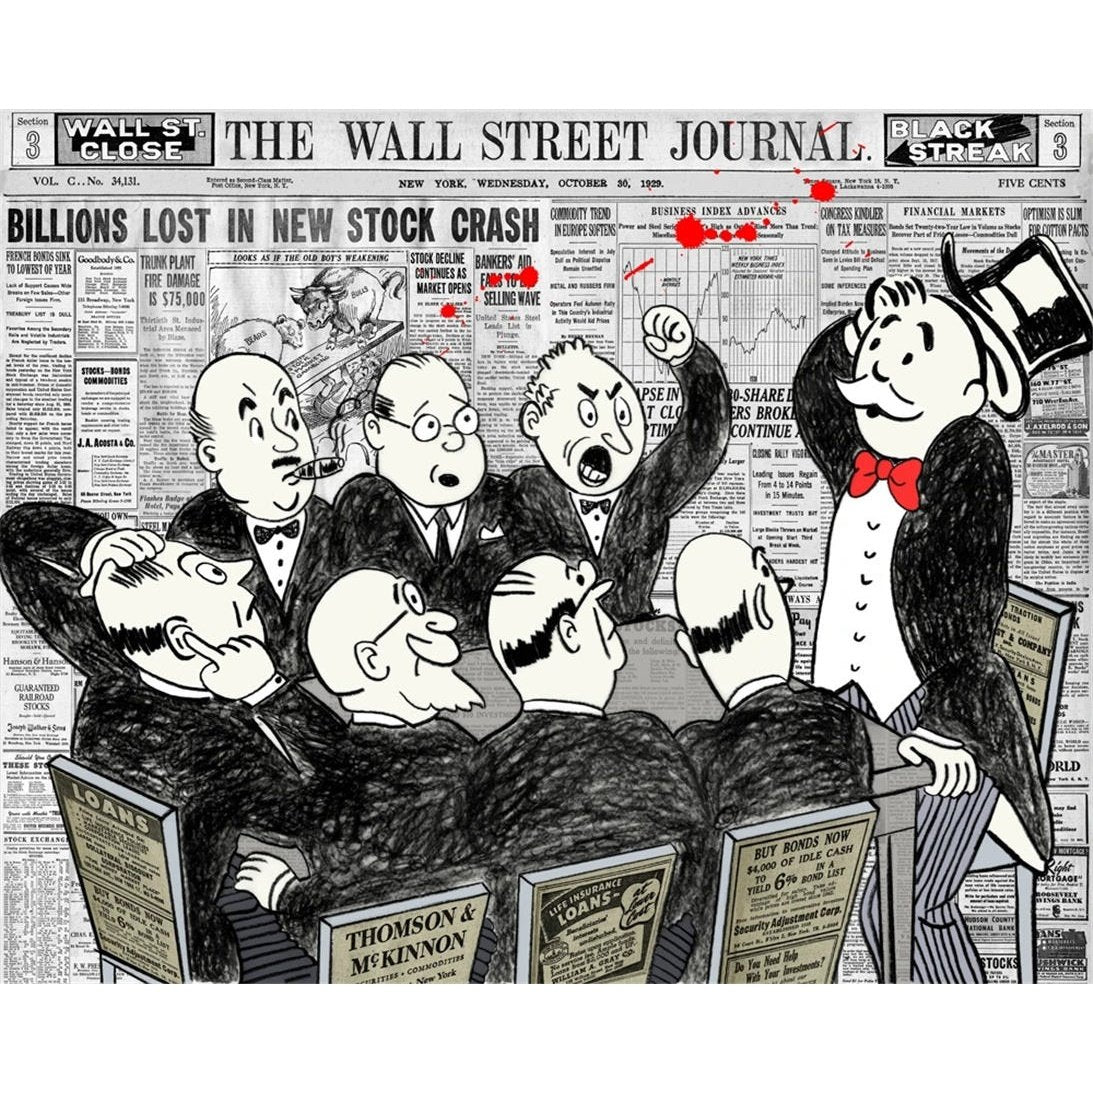 Wall Street Journal - Alec Monopoly's Artwork